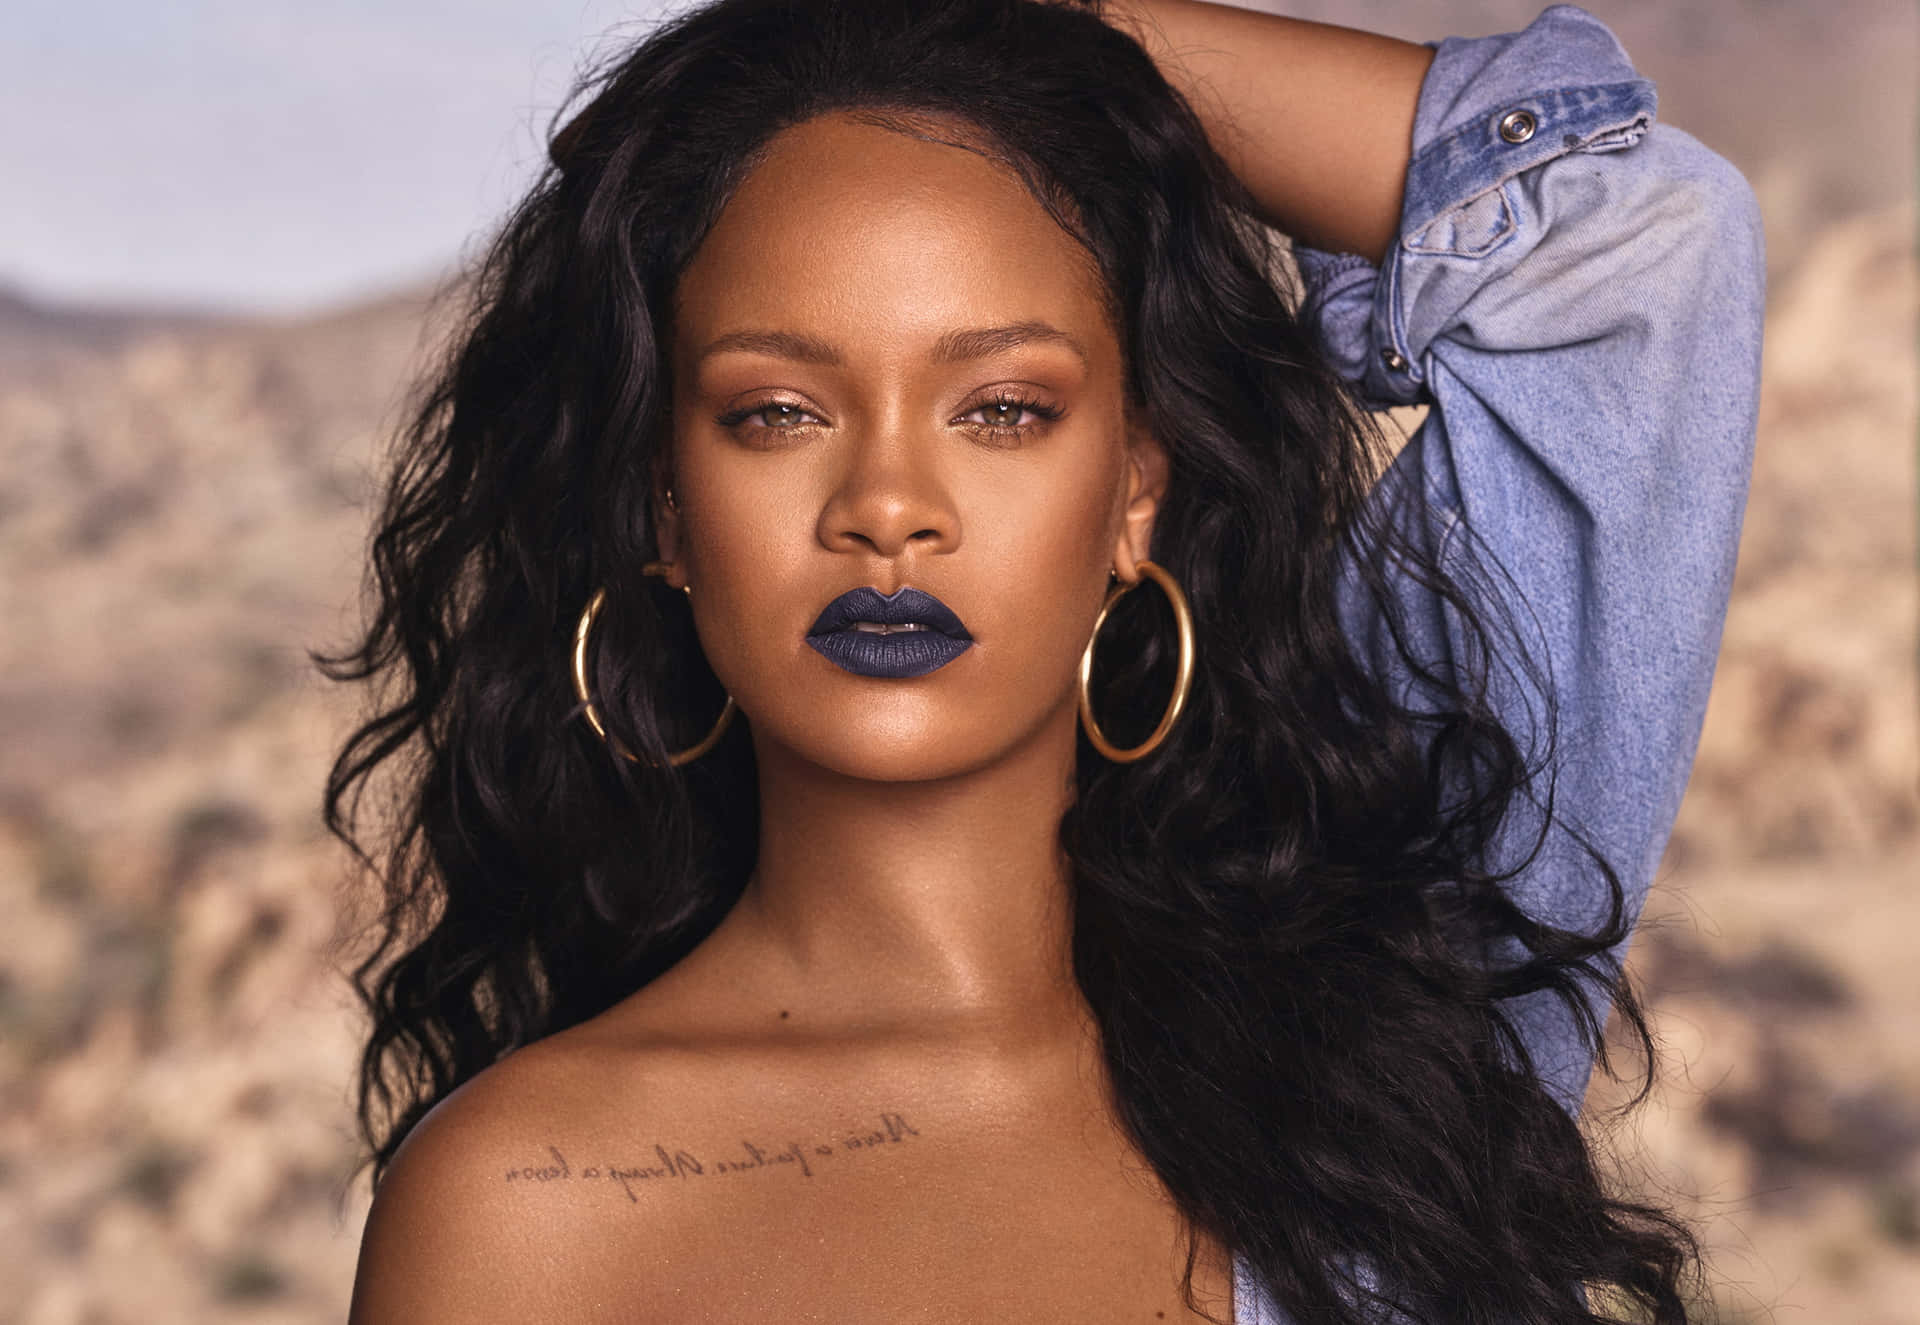 Download Imagens De Rihanna Wallpaper